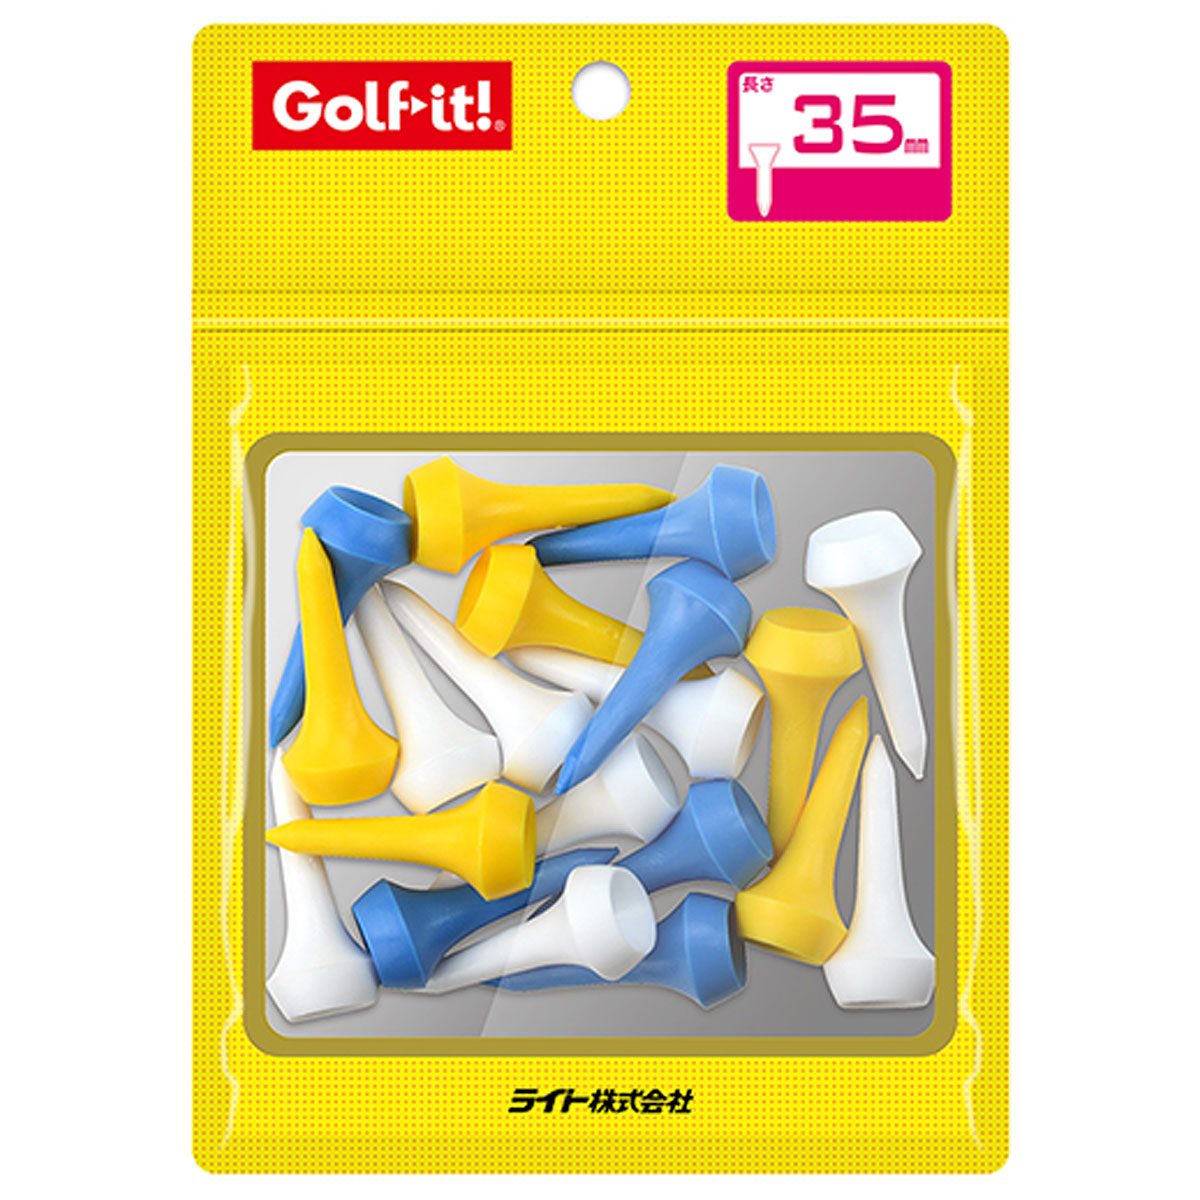 ゴルフ規則に適合 Golfit 割引も実施中 ゴルフイット LiTE ライト 日本正規品 シェルパックアイアンティー35 20本入 全長35mm T-532 贈物 あす楽対応